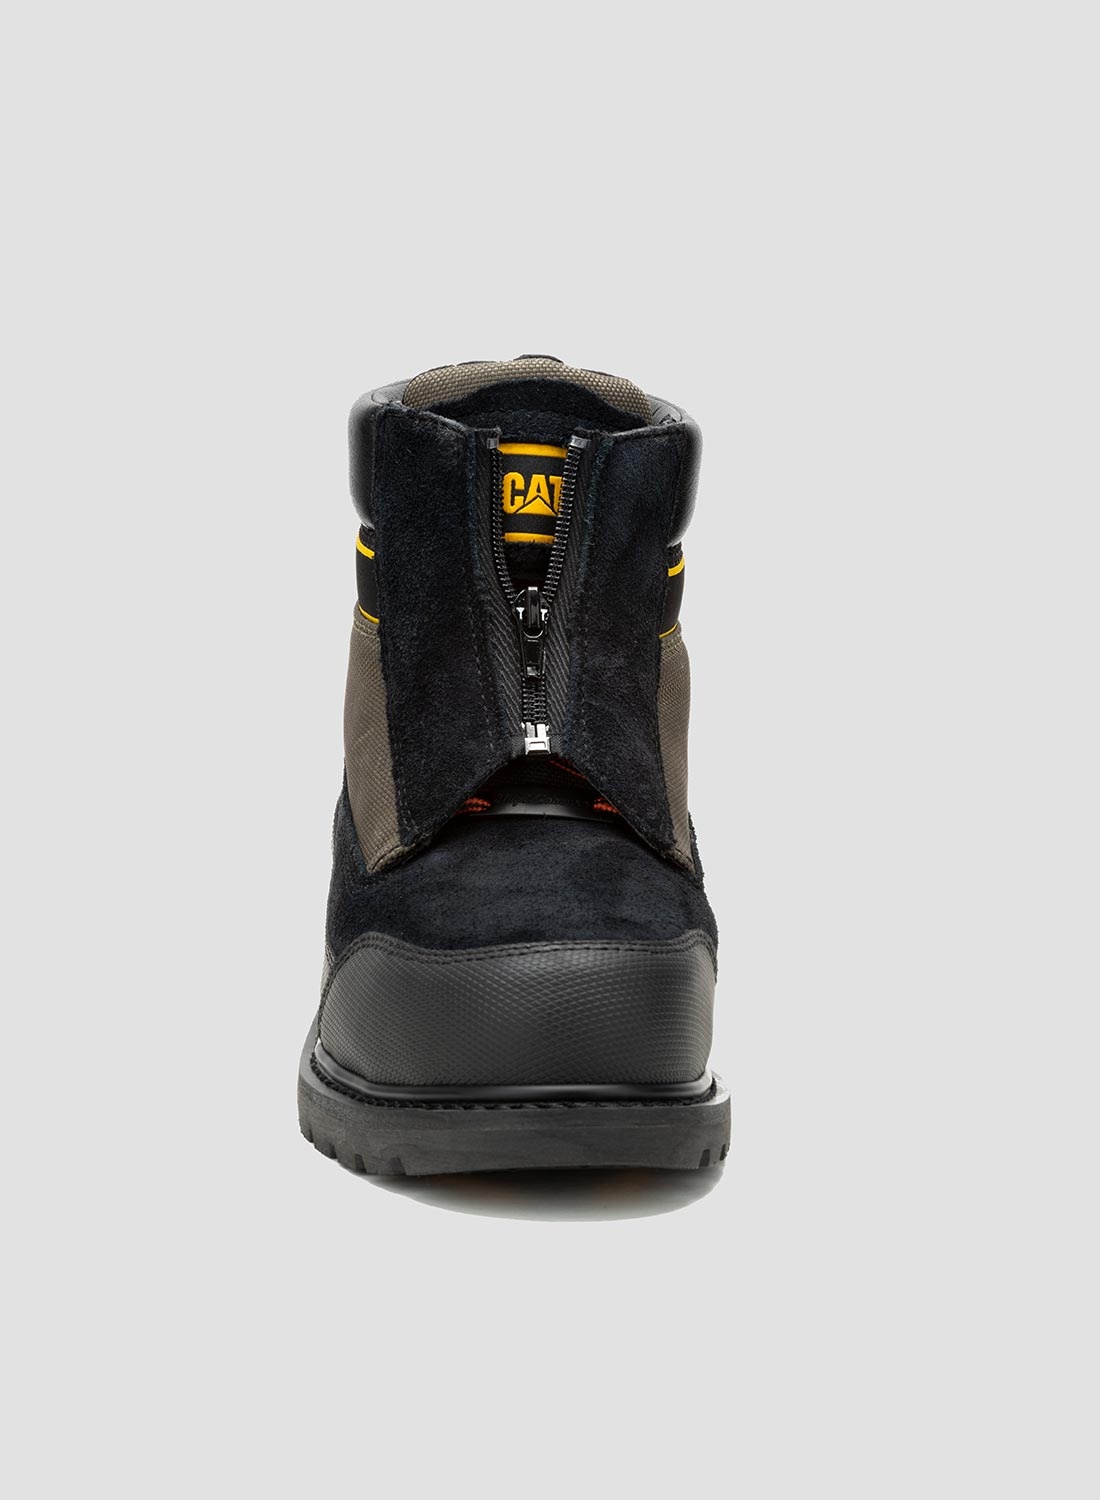 CAT Footwear x Nigel Cabourn Utah Zip in Black Olive - 4